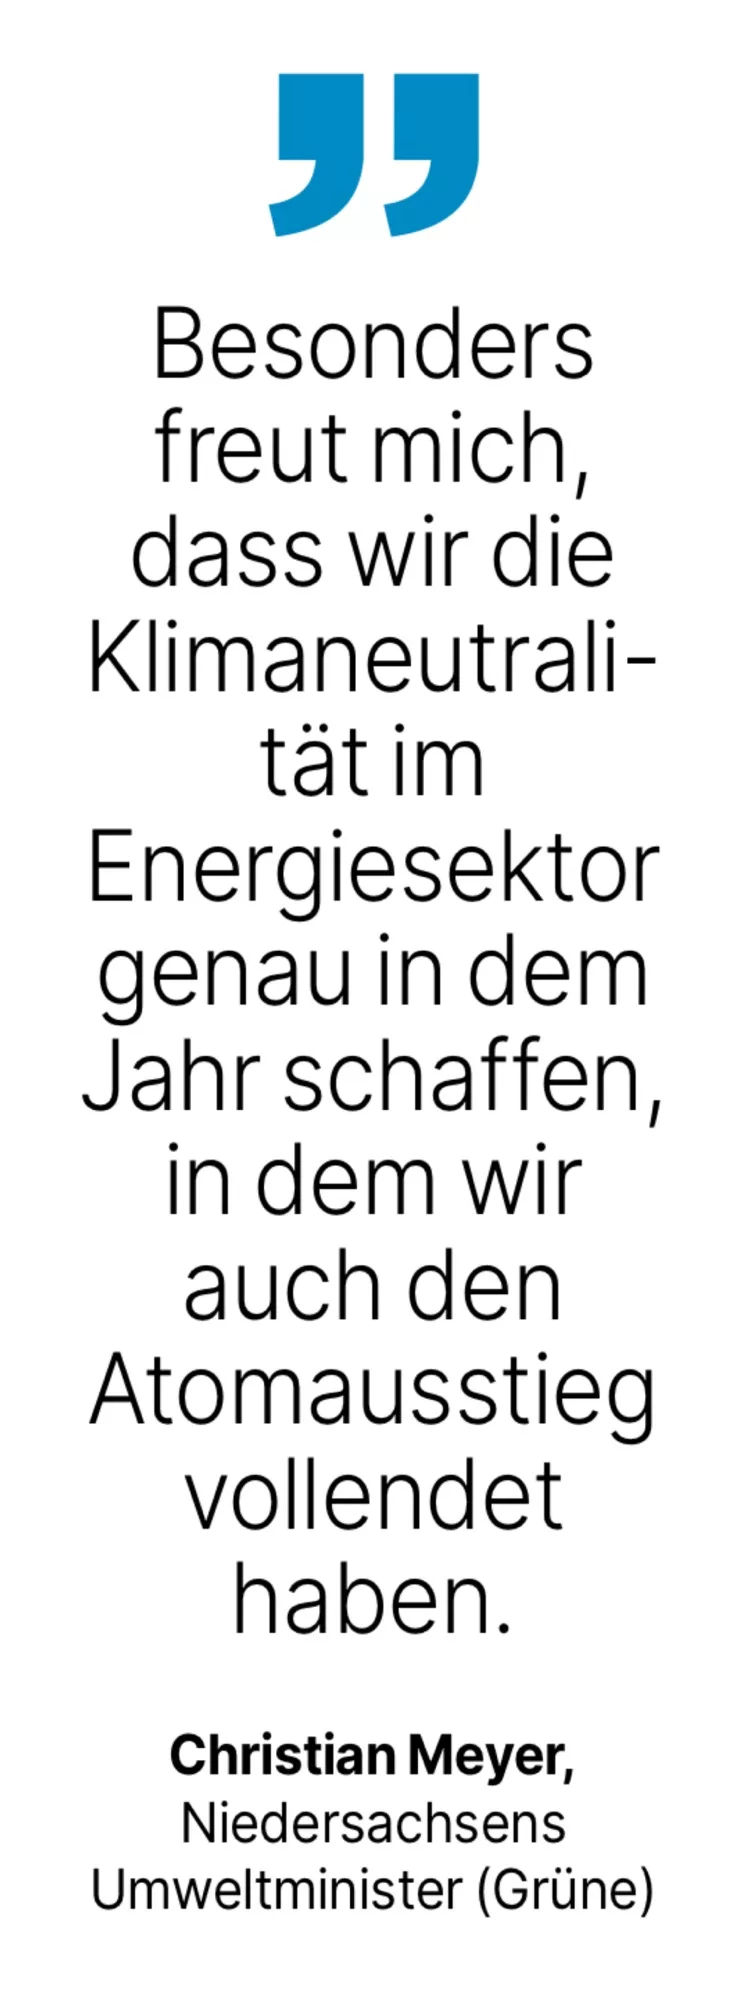 Christian Meyer, Niedersachsens Umweltminister (Grüne): Besonders freut mich, dass wir die Klimaneutrali-tät im
Energiesektor genau in dem Jahr schaffen, in dem wir auch den Atomausstieg vollendet haben.